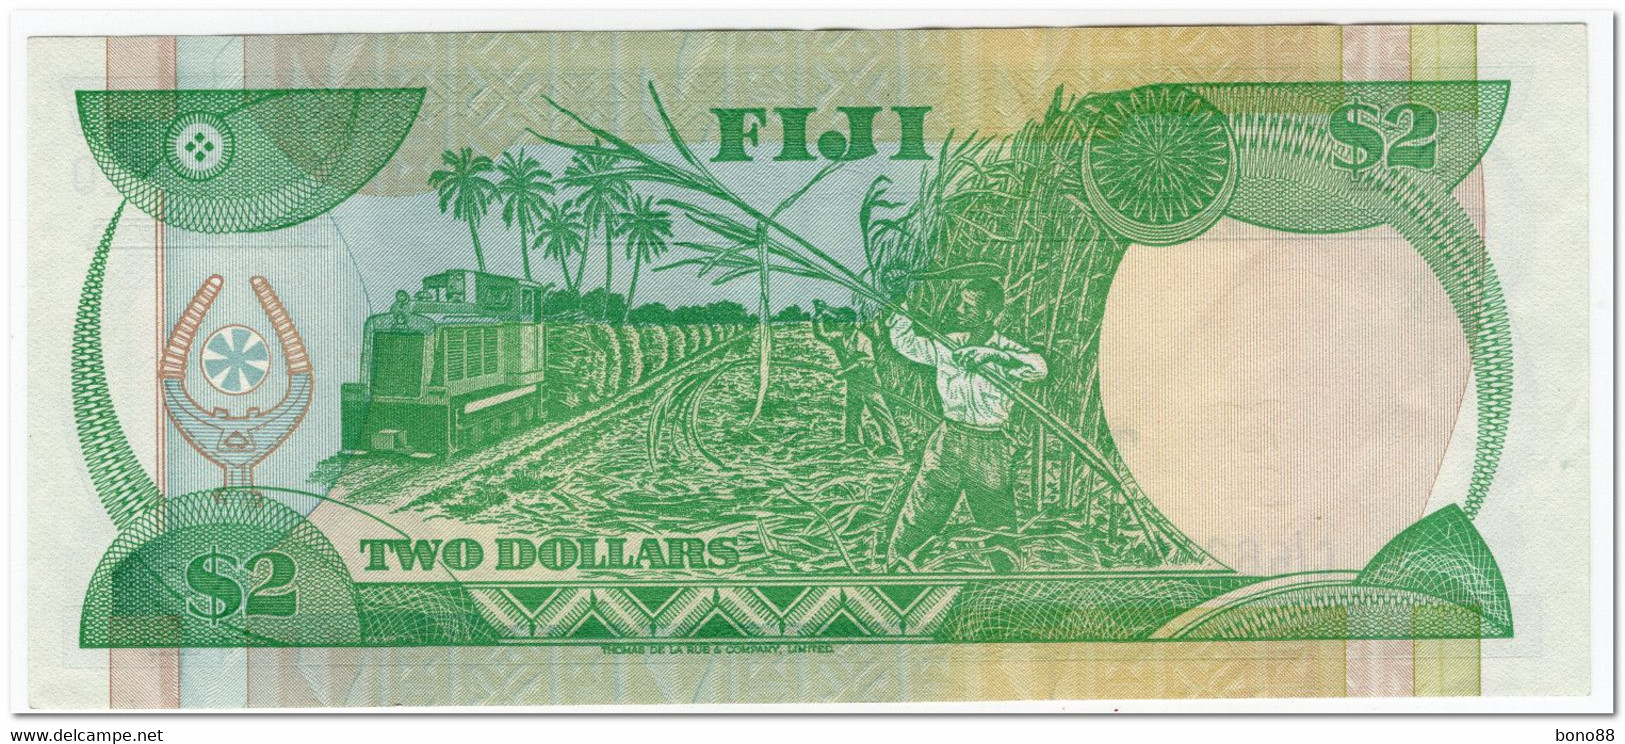 FIJI,2 DOLLARS,1983,P.82,VF-XF - Figi